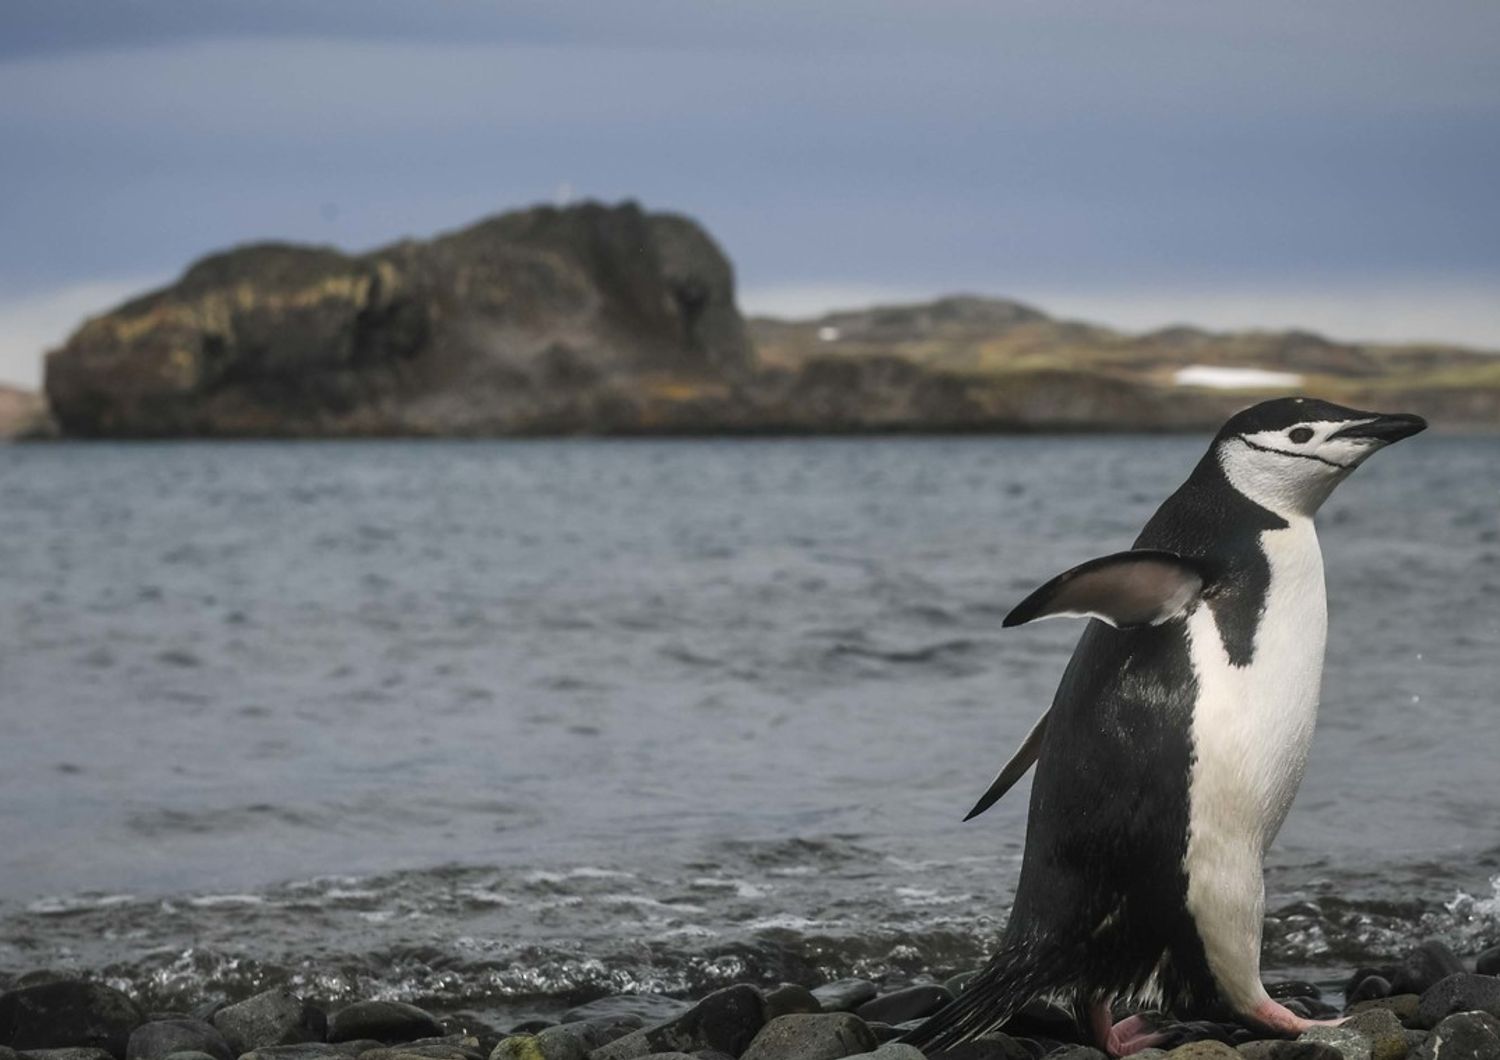 Un pinguino di Adelia fotografato sull'isola di Re Giorgio, in Antartide